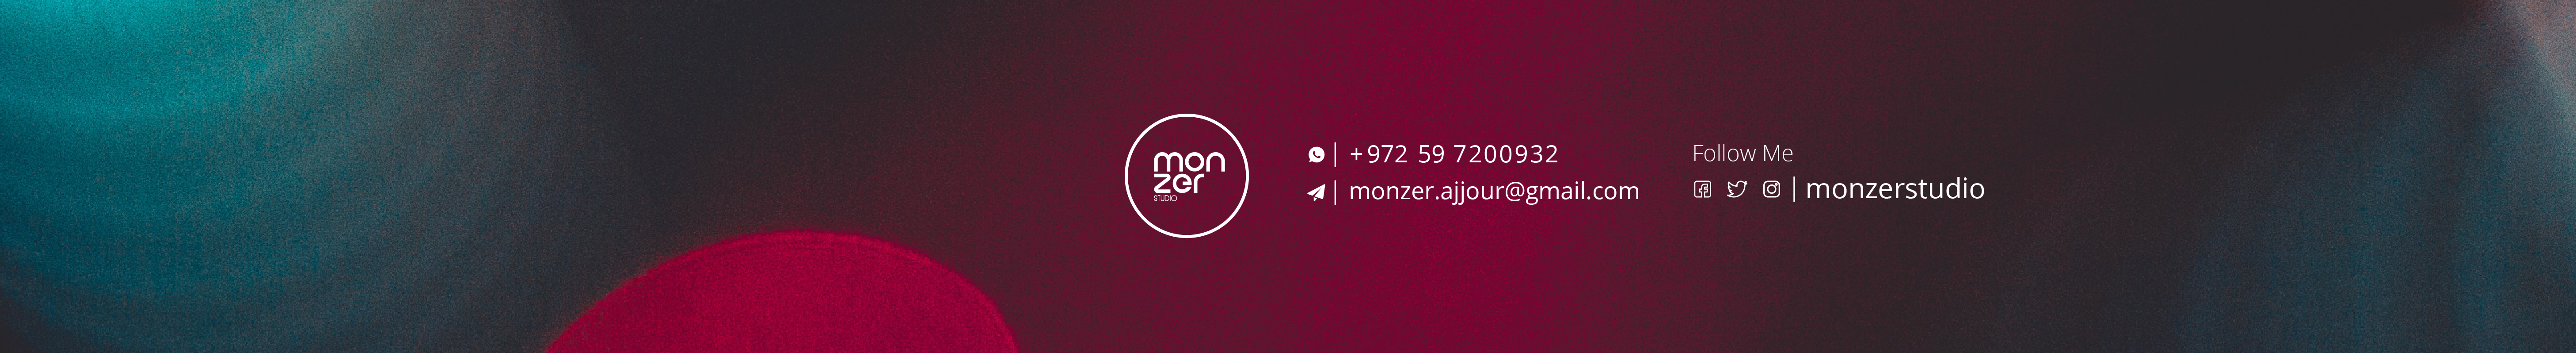 Monzer Ajjour's profile banner